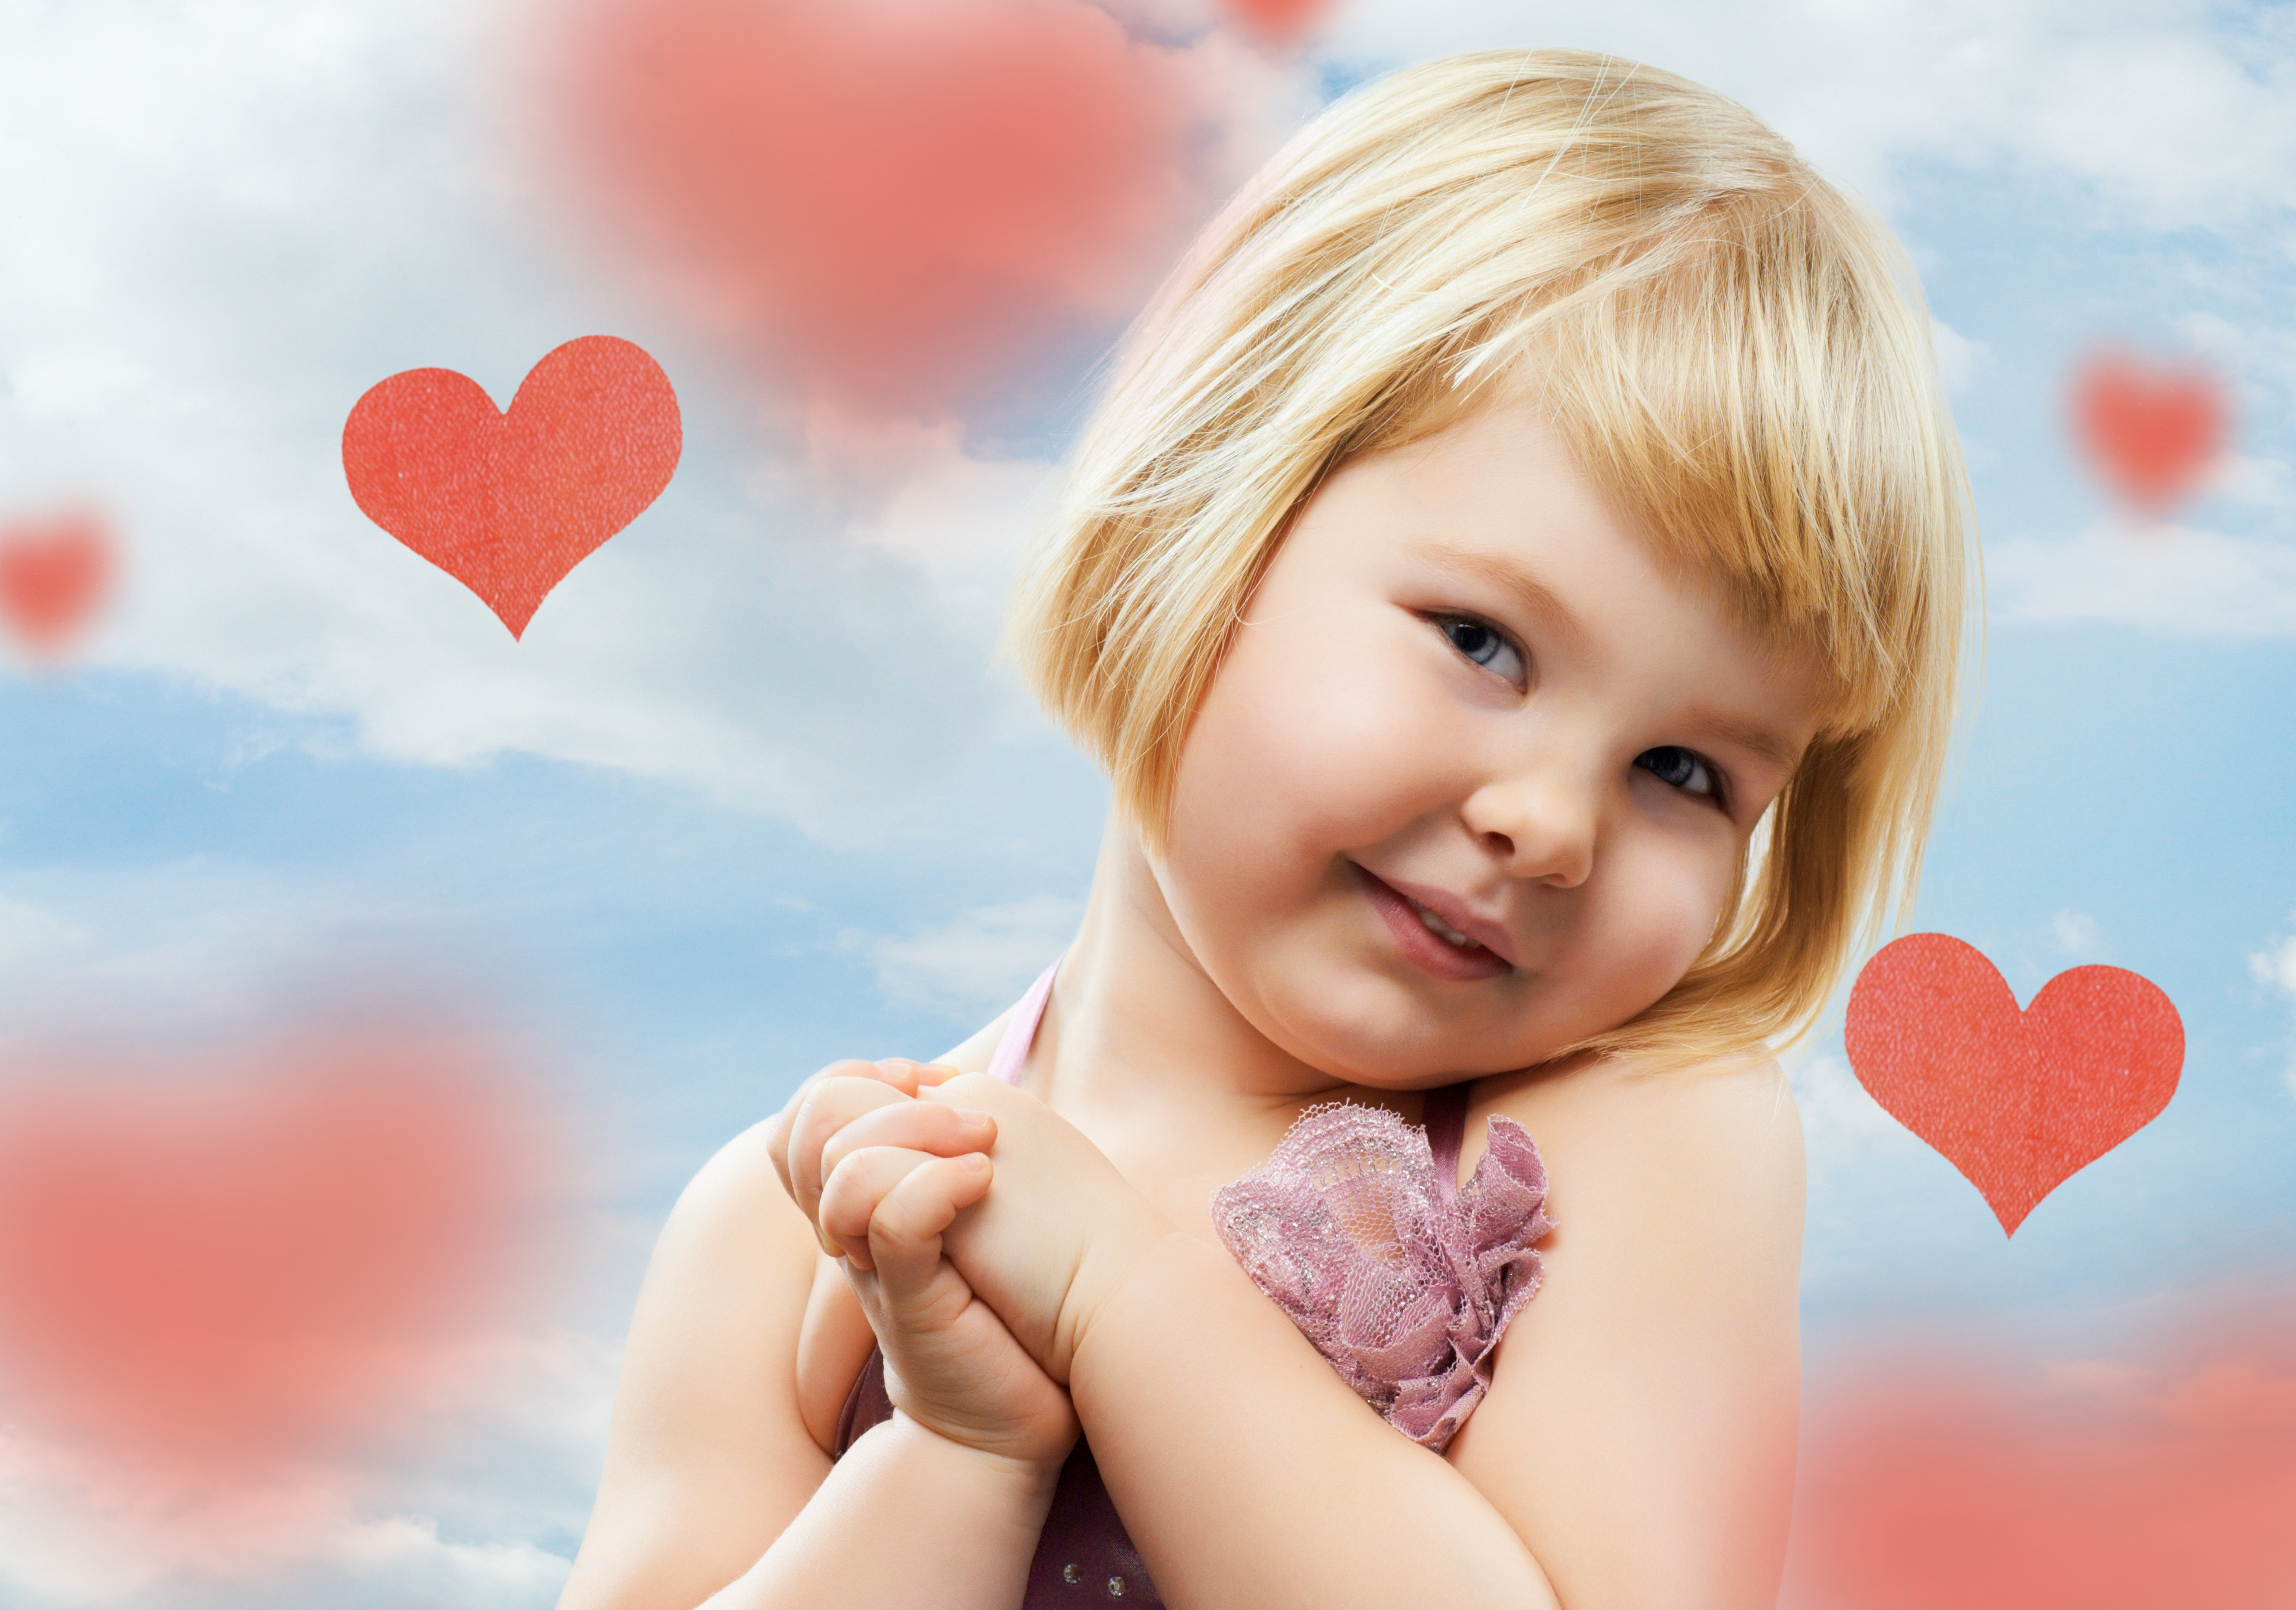 Я люблю маленьких девочек. Девочка с сердечком. Счастливый ребенок. Воздушный поцелуй. Сердечки для детей.